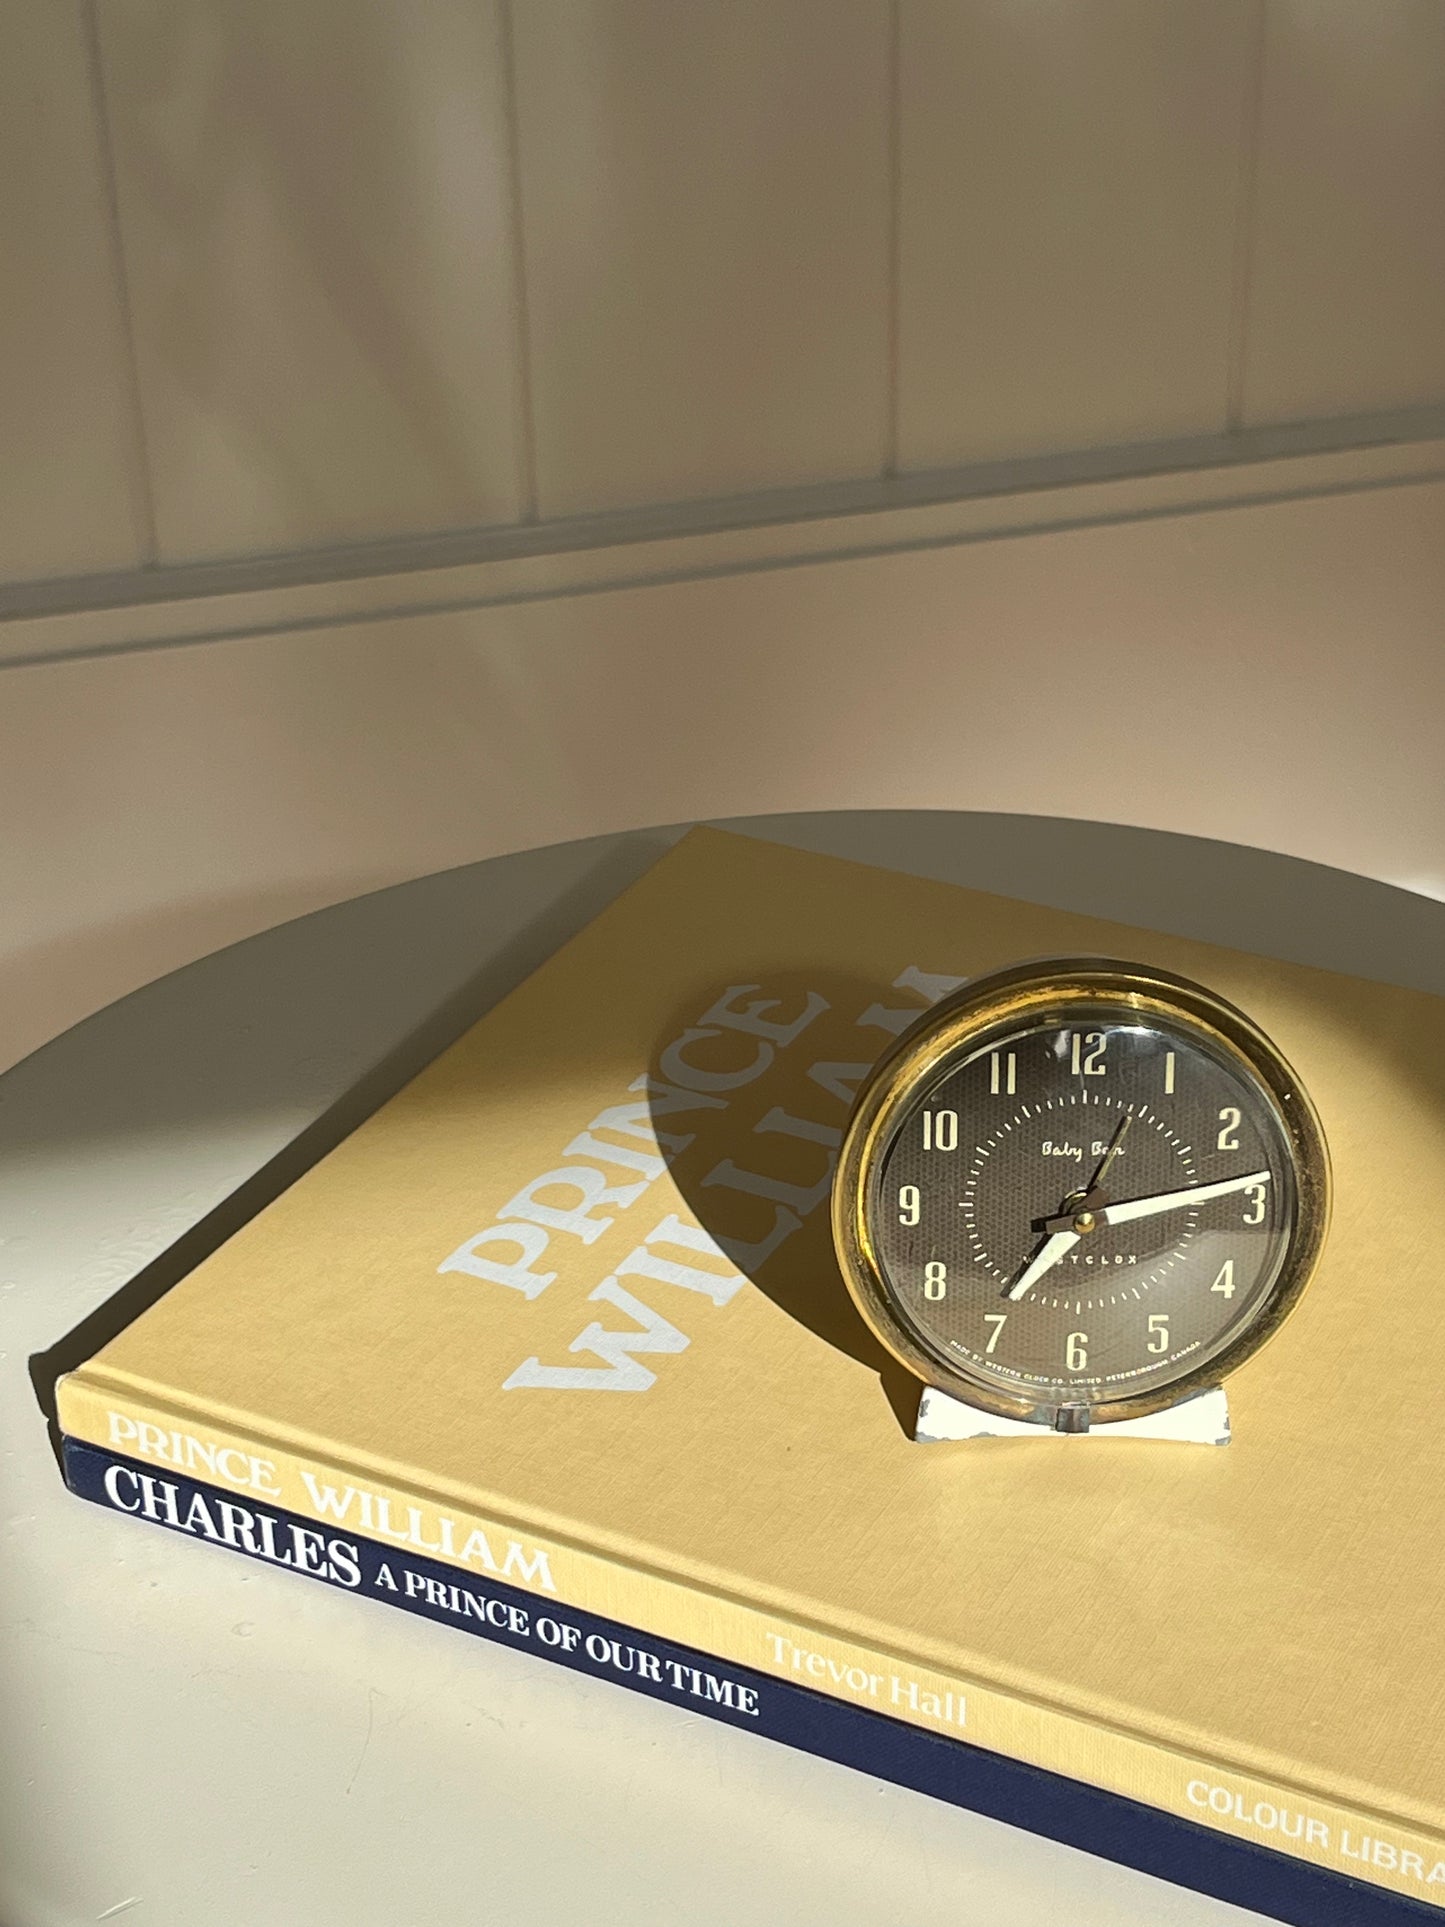 vintage westclox baby ben clock